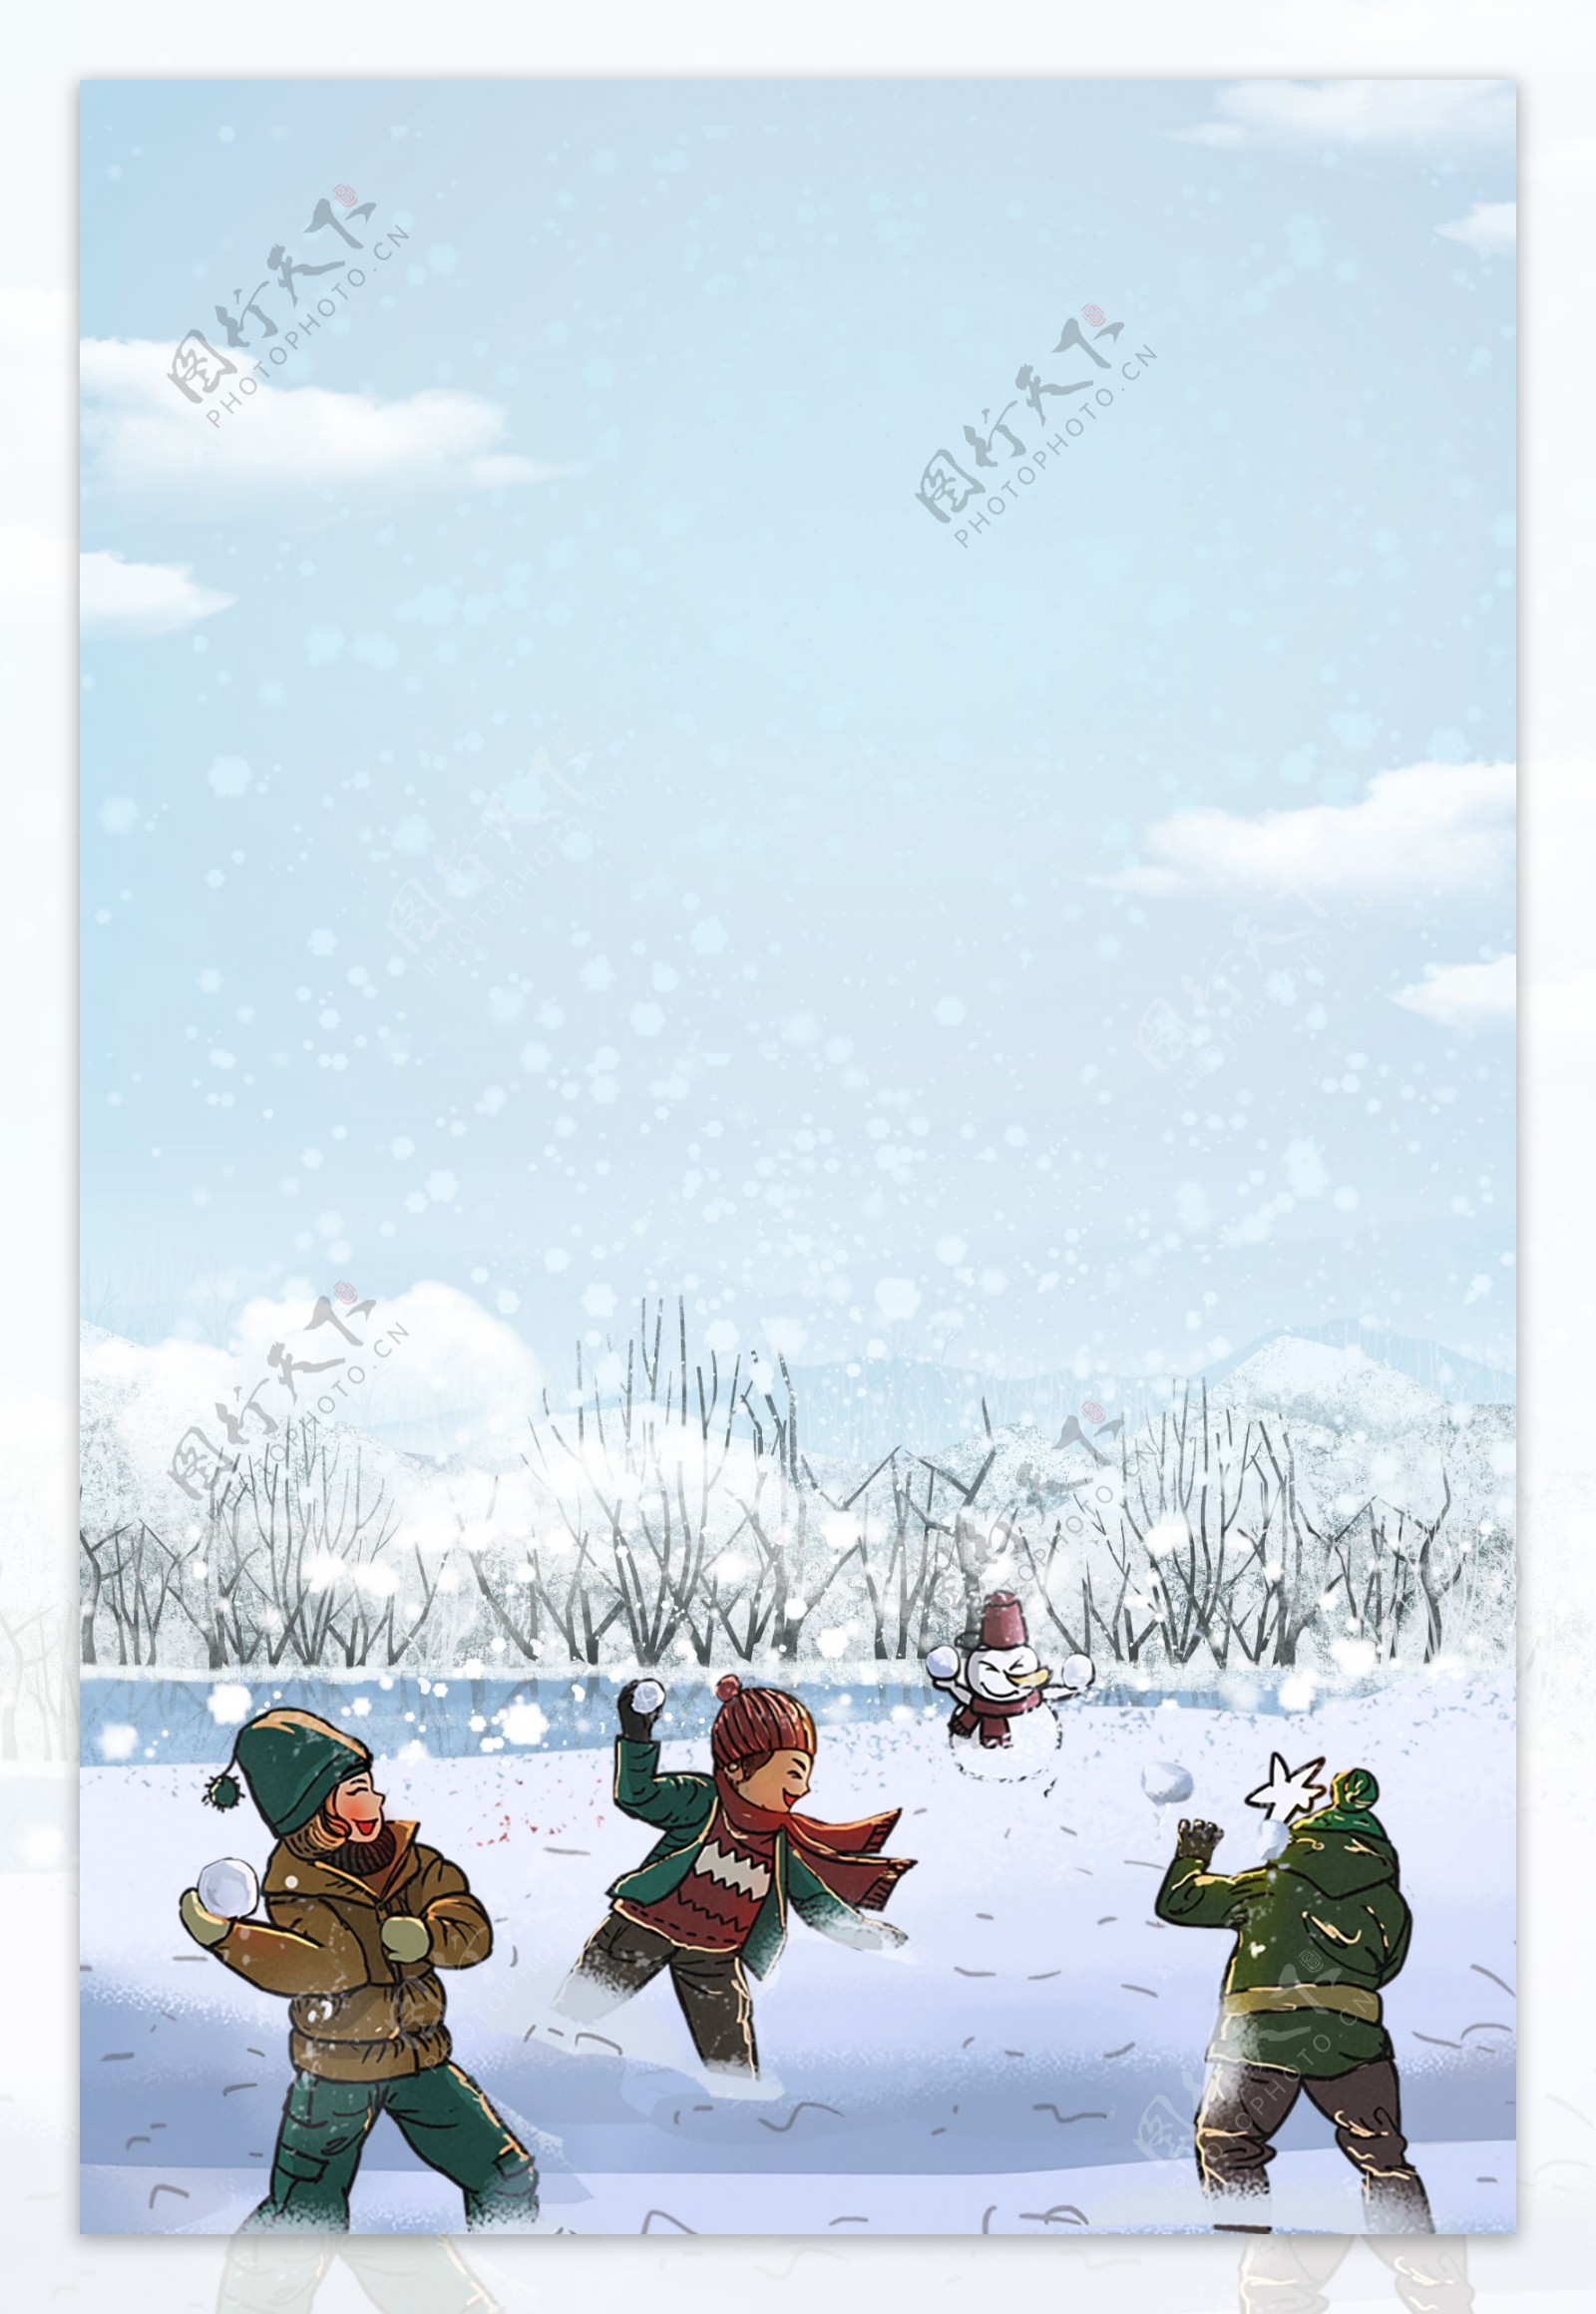 冬令营儿童打雪仗海报下载